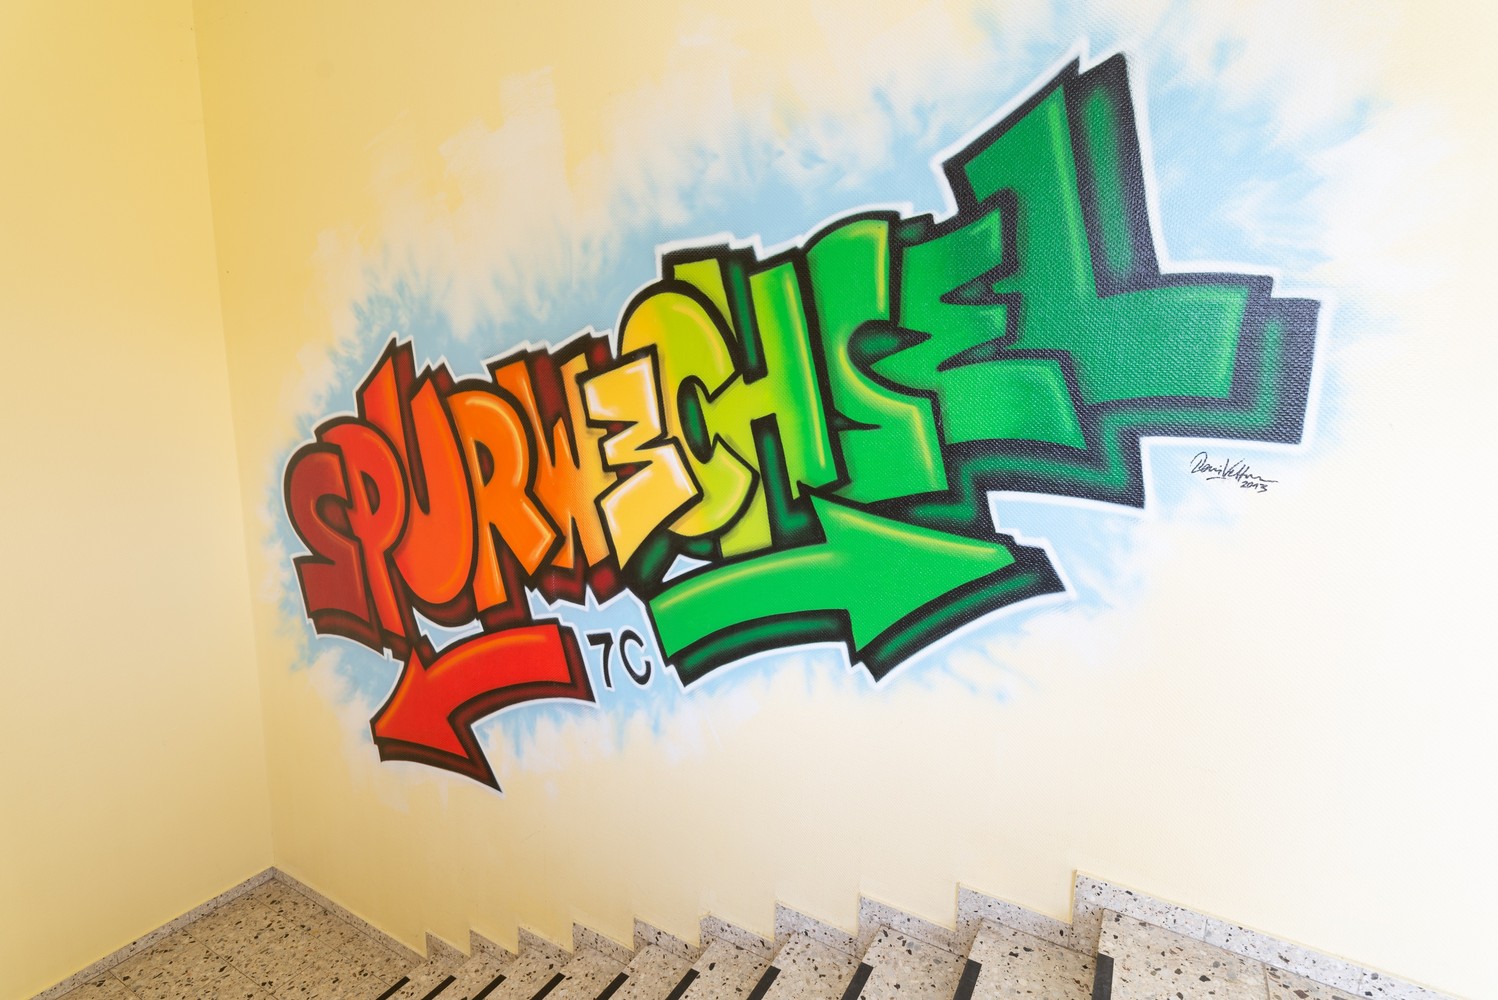 Das Bild zeigt ein buntes Graffiti, mit dem Wort Spurwechsel